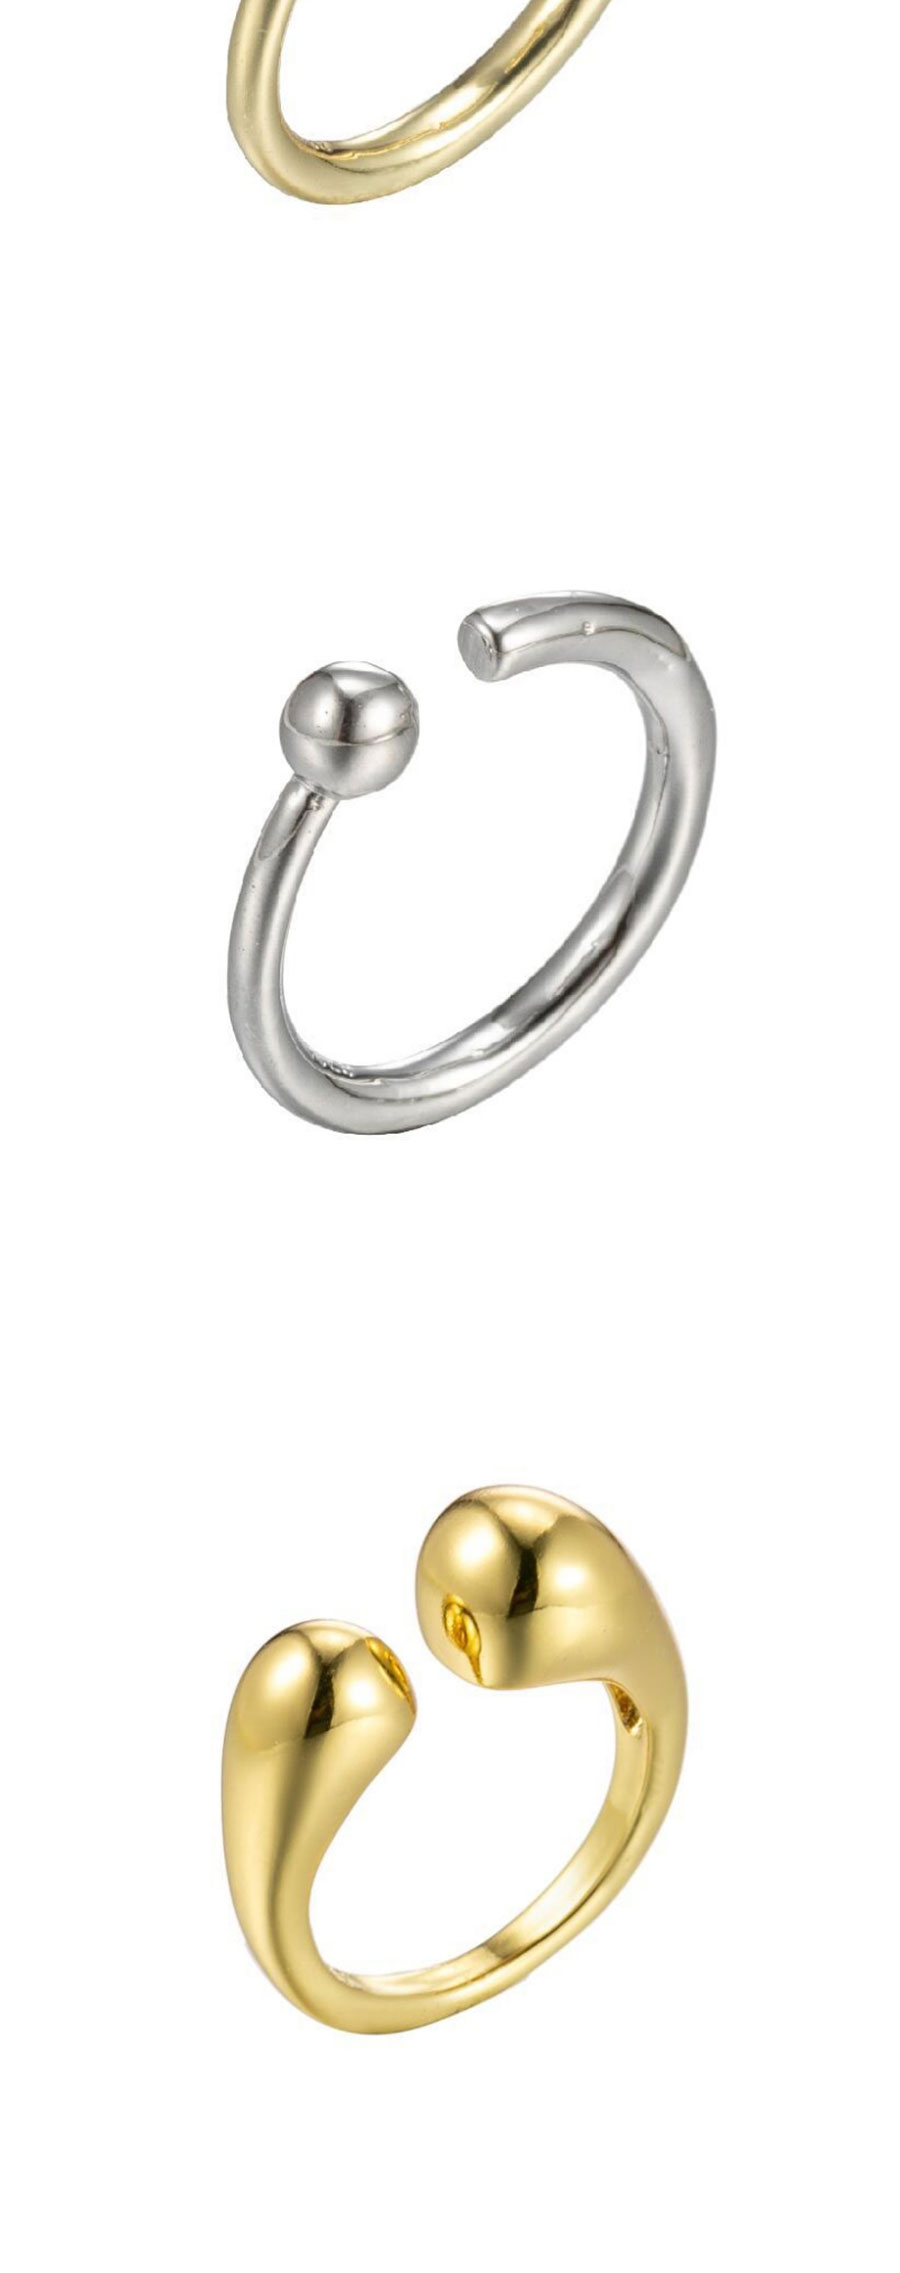 Fashion Silver-9 Stainless Steel Irregular Drop Opening Ring,Rings